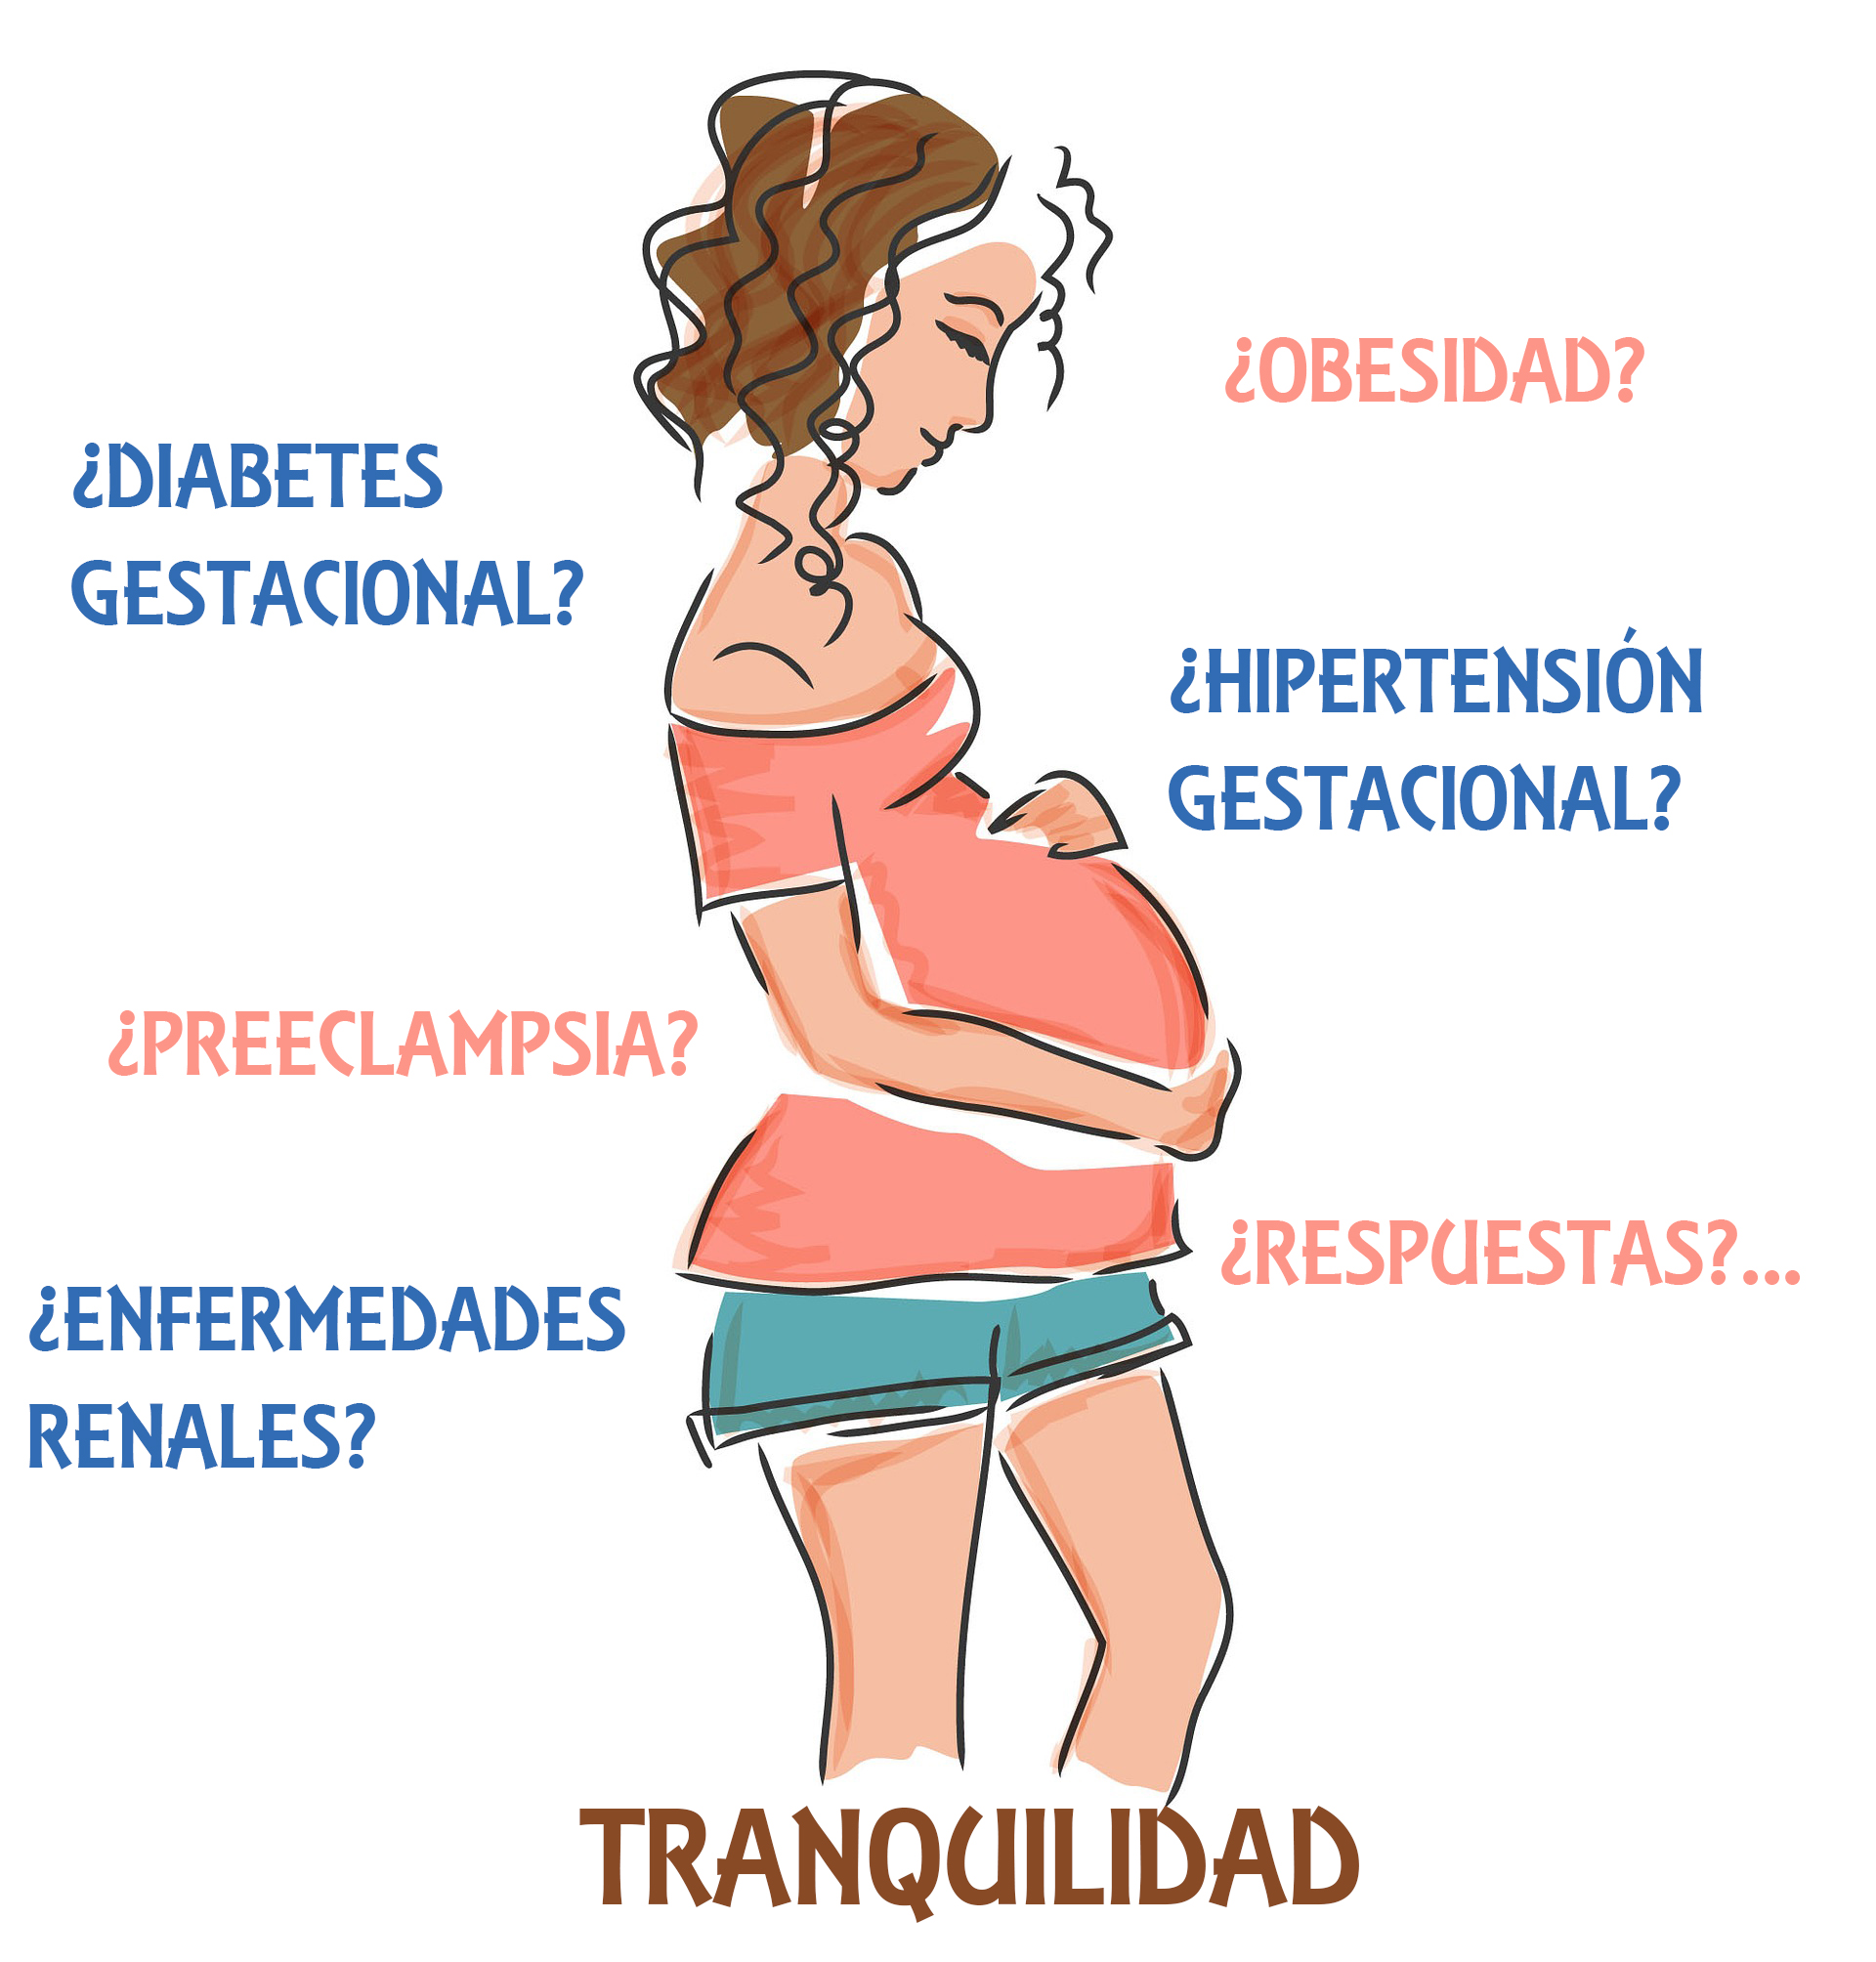 Peligros de levantar peso durante el embarazo - GESTOS5D